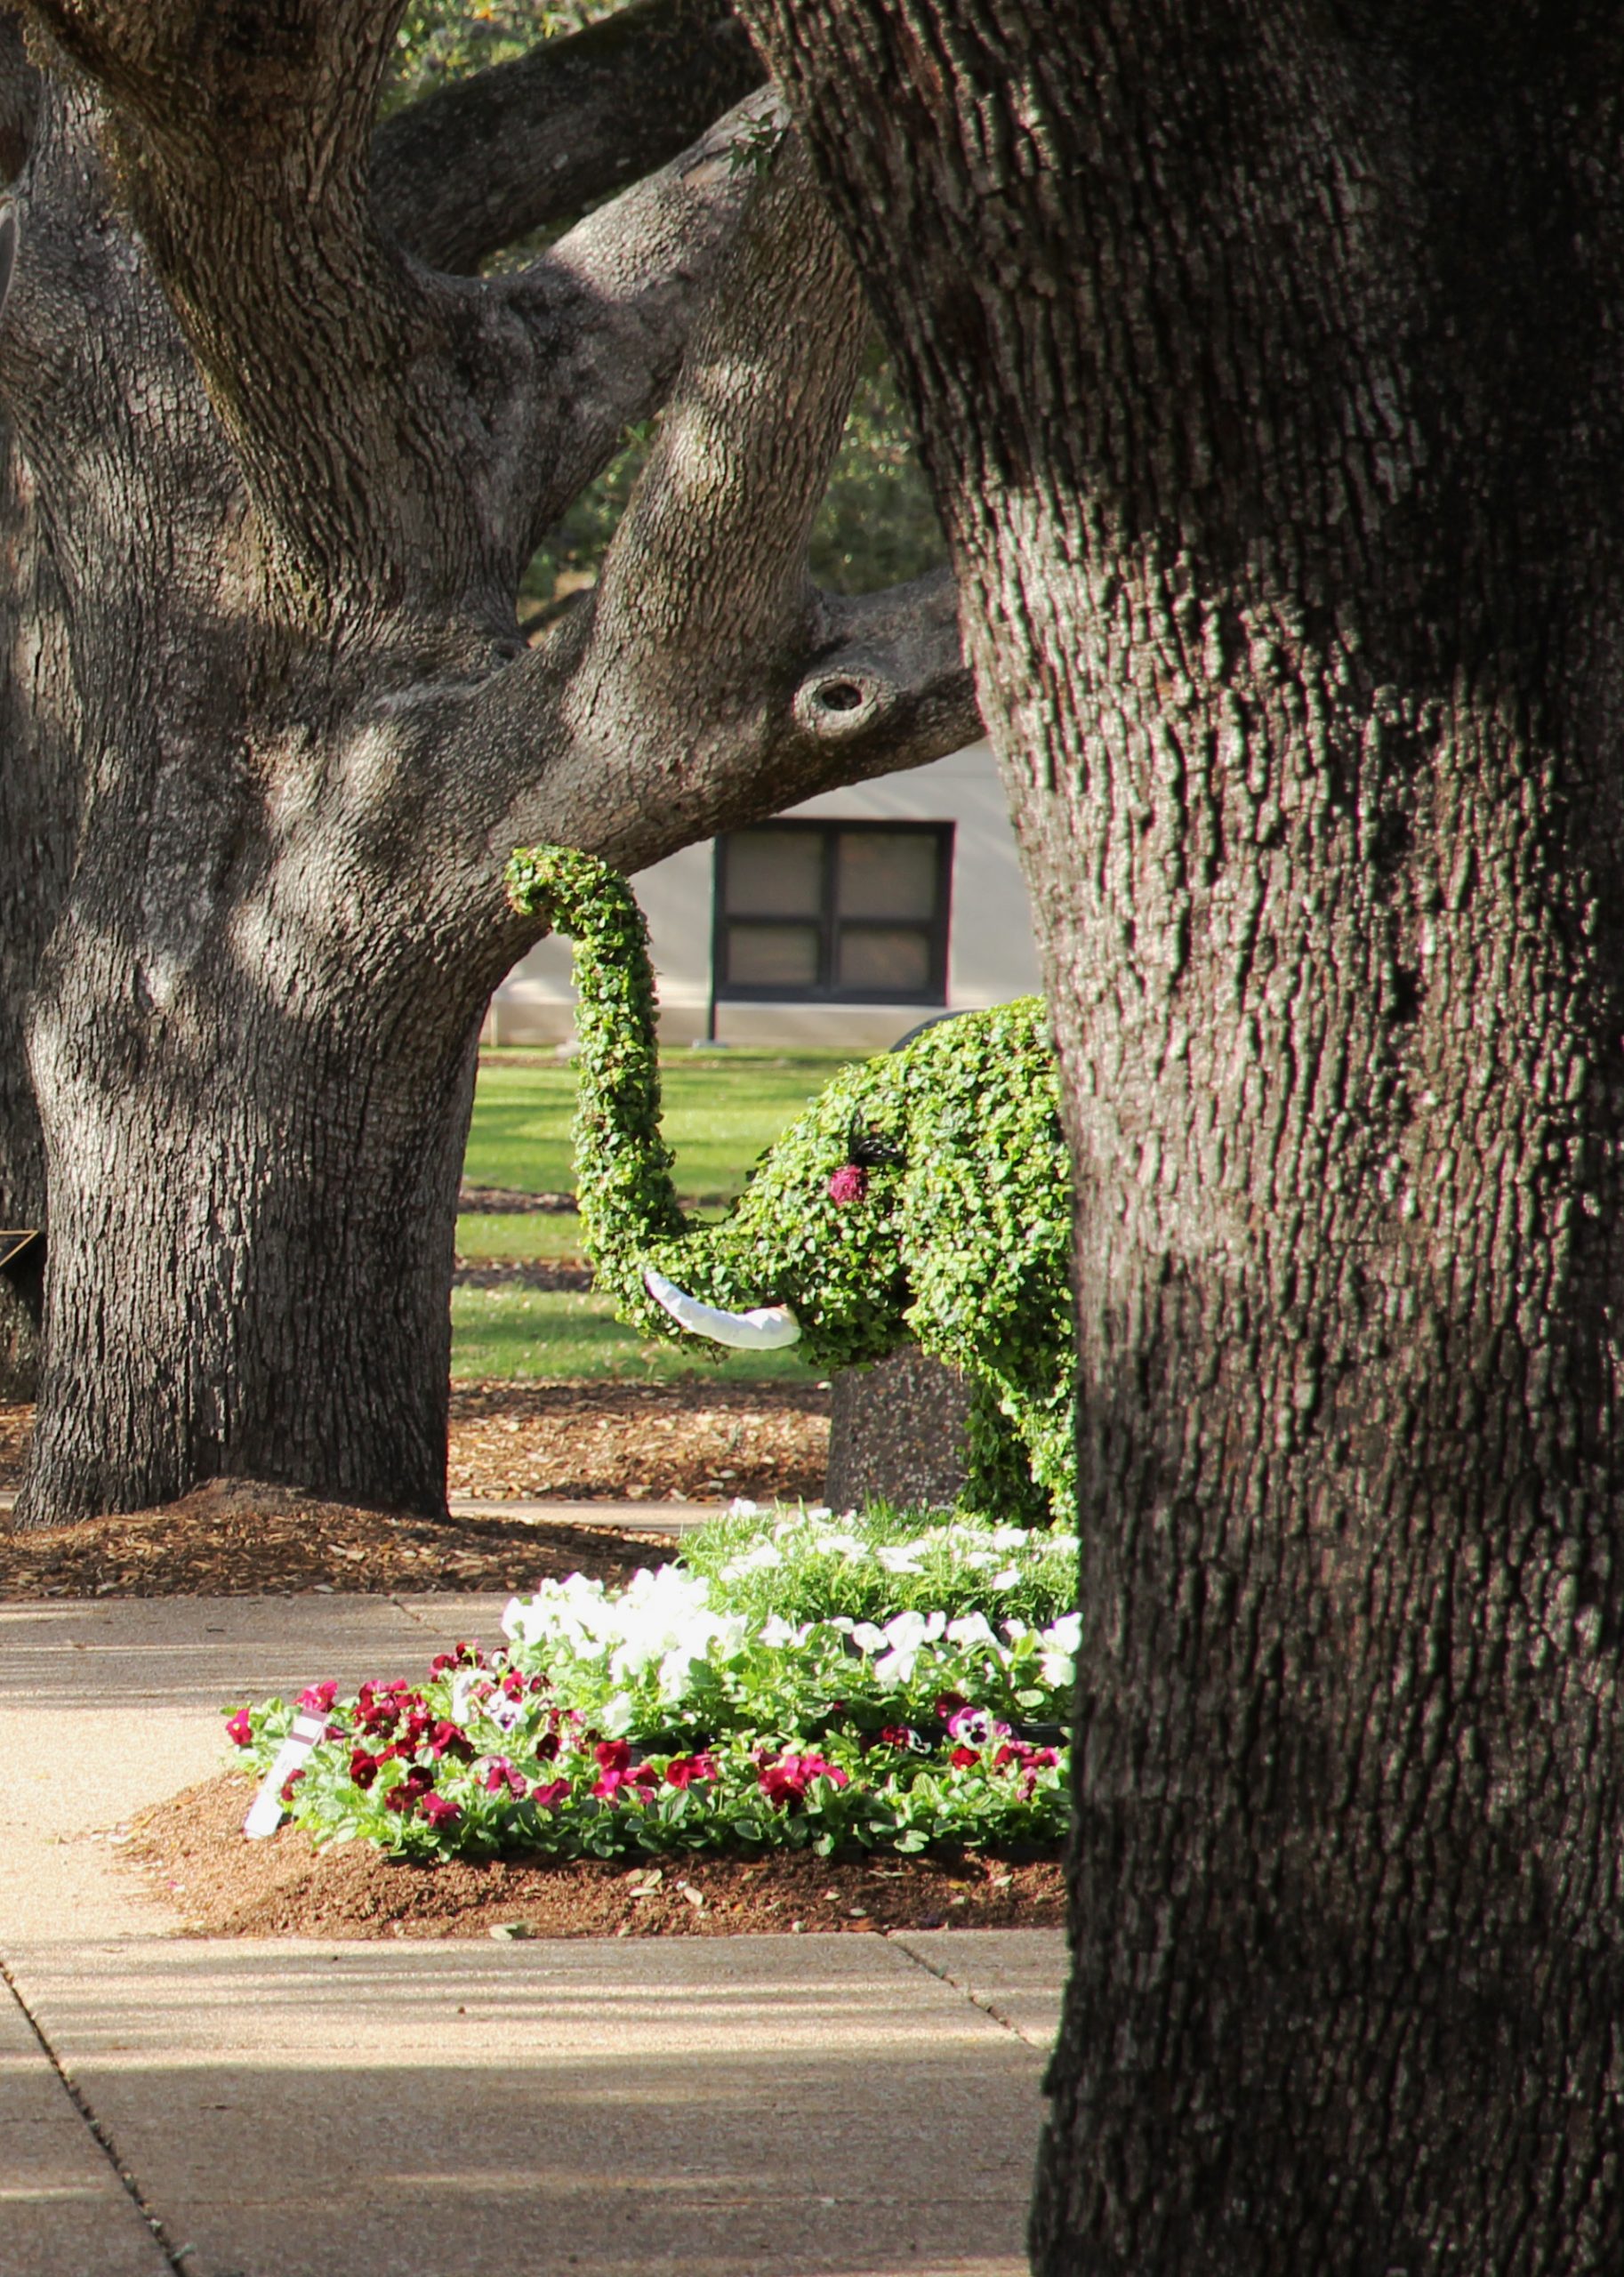 Elephant topiary in Academic Plaza.